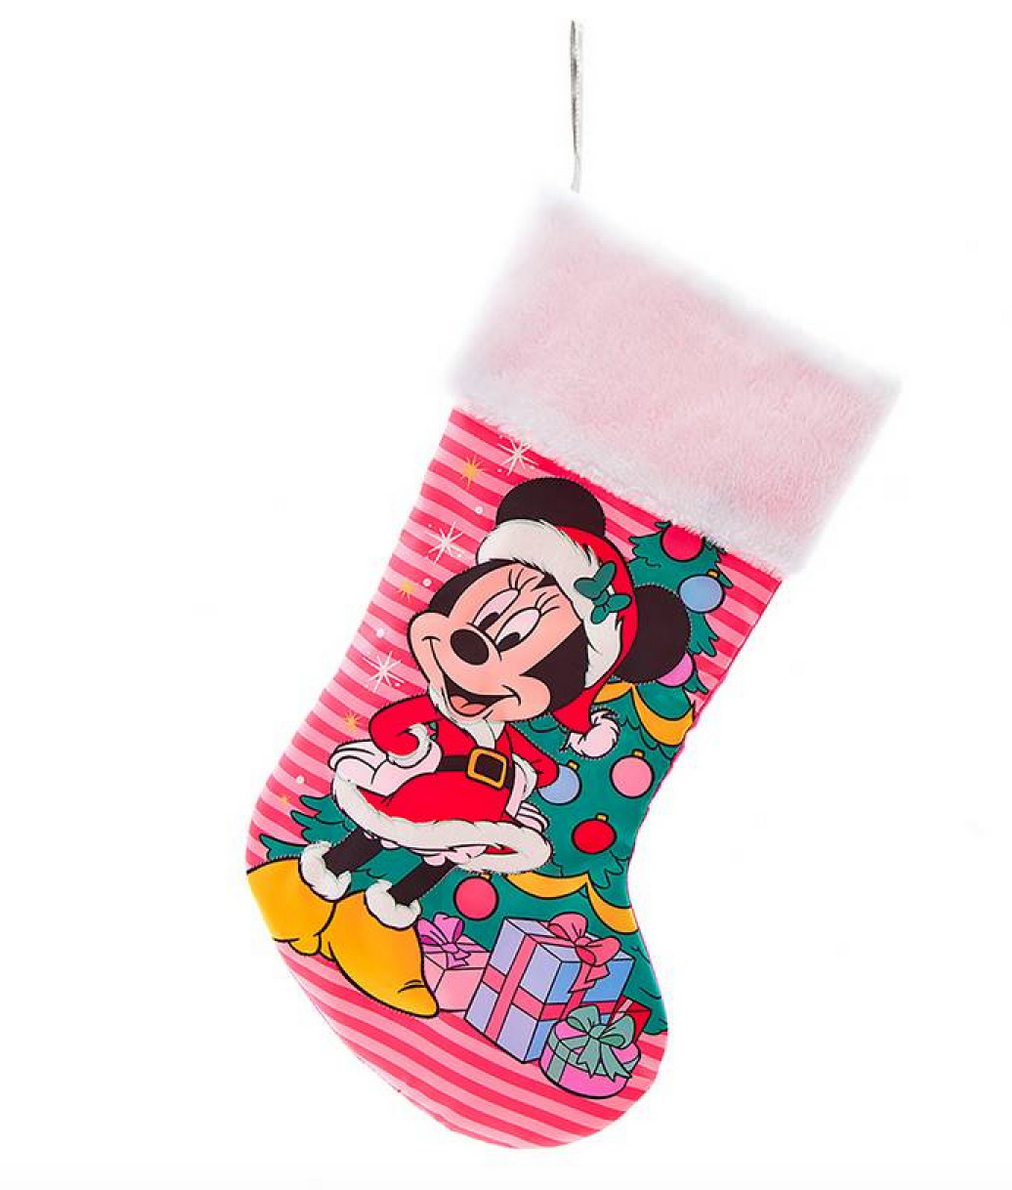 Minnie Mouse julesok - Disney julesok til børn og barnlige sjæle